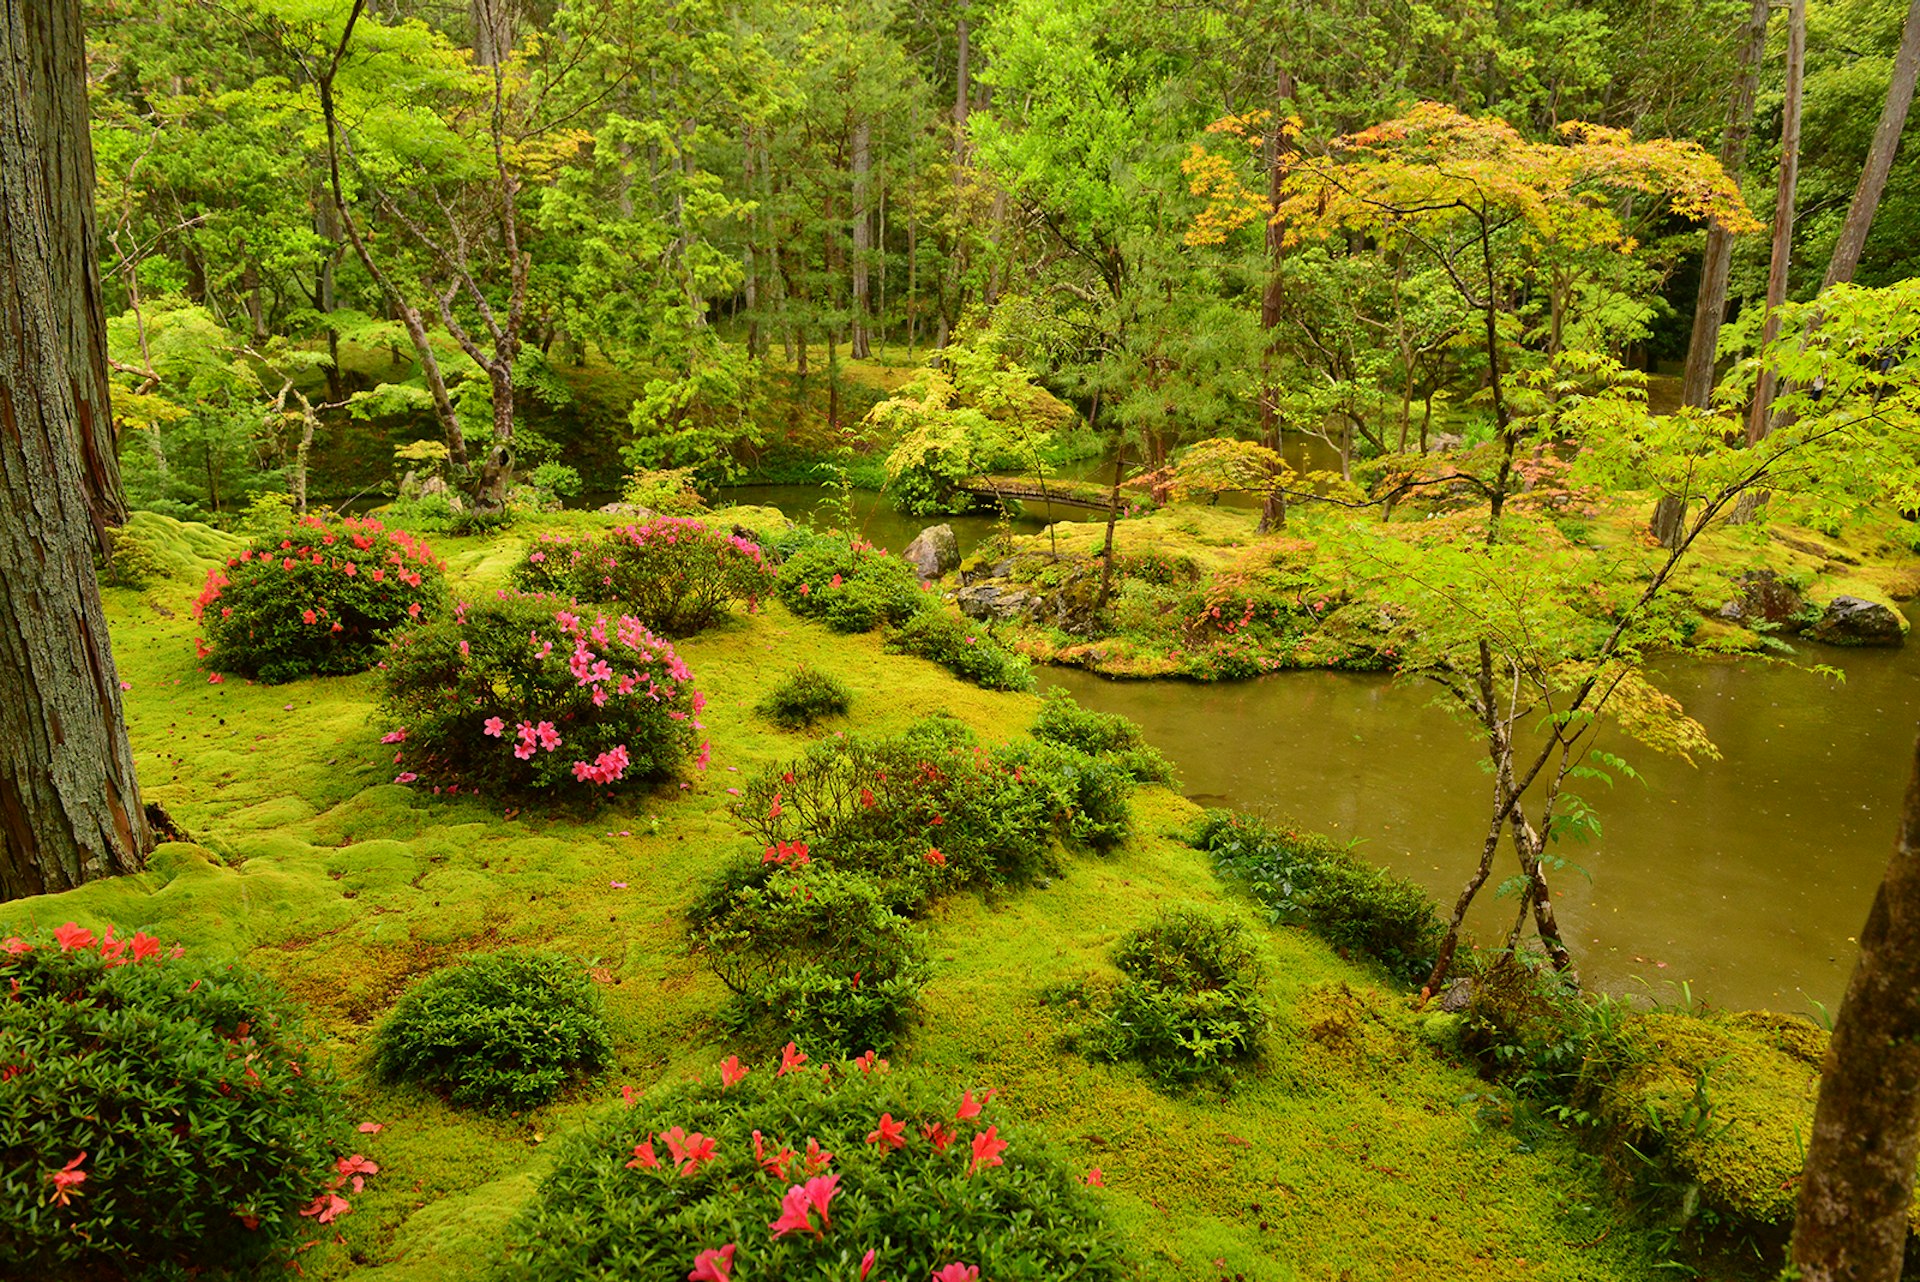 The landscape garden of Saihō-ji, Kyoto